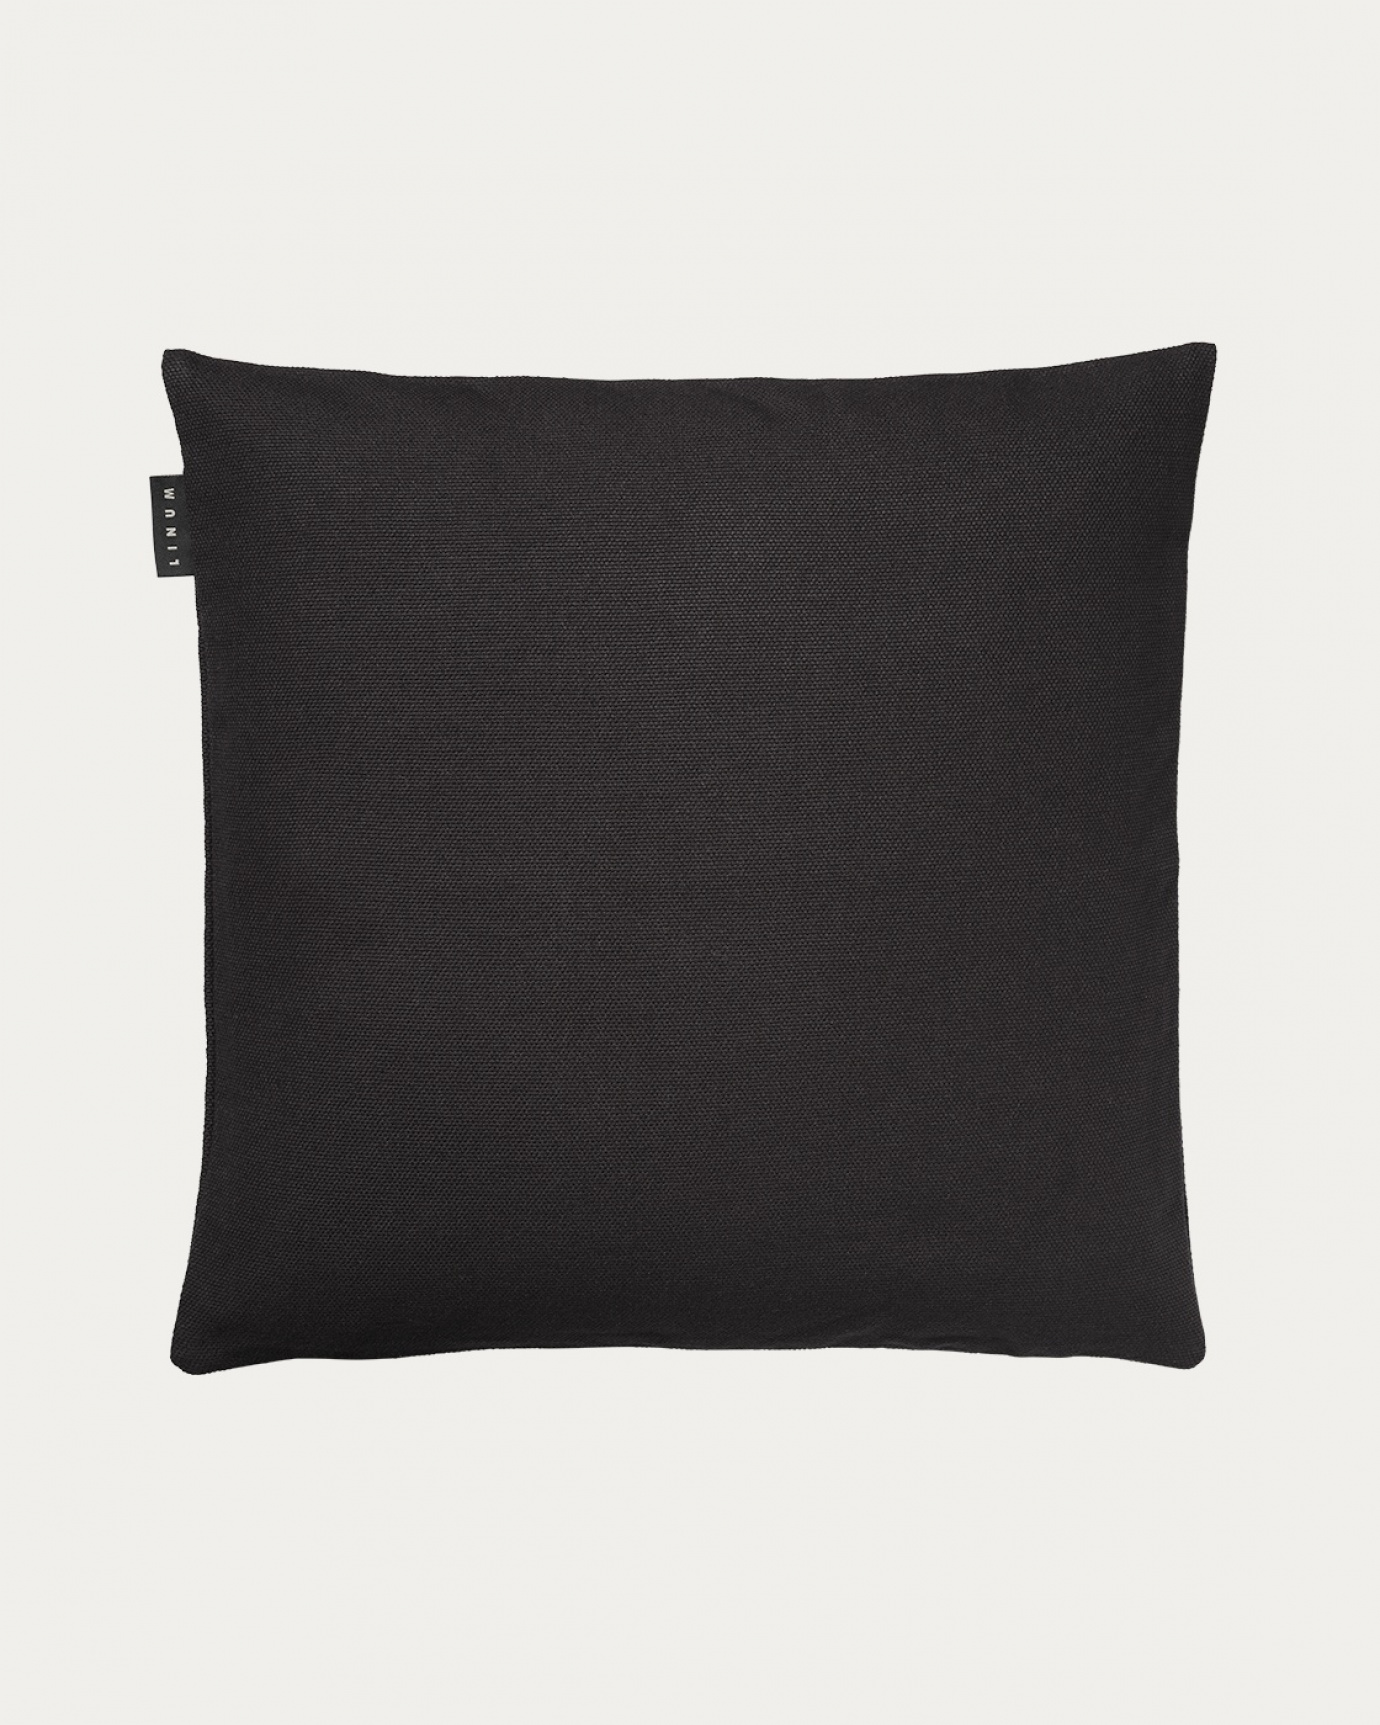 Produktbild schwarze melange PEPPER Kissenhülle aus weicher Baumwolle von LINUM DESIGN. Einfach zu waschen und langlebig für Generationen. Größe 50x50 cm.